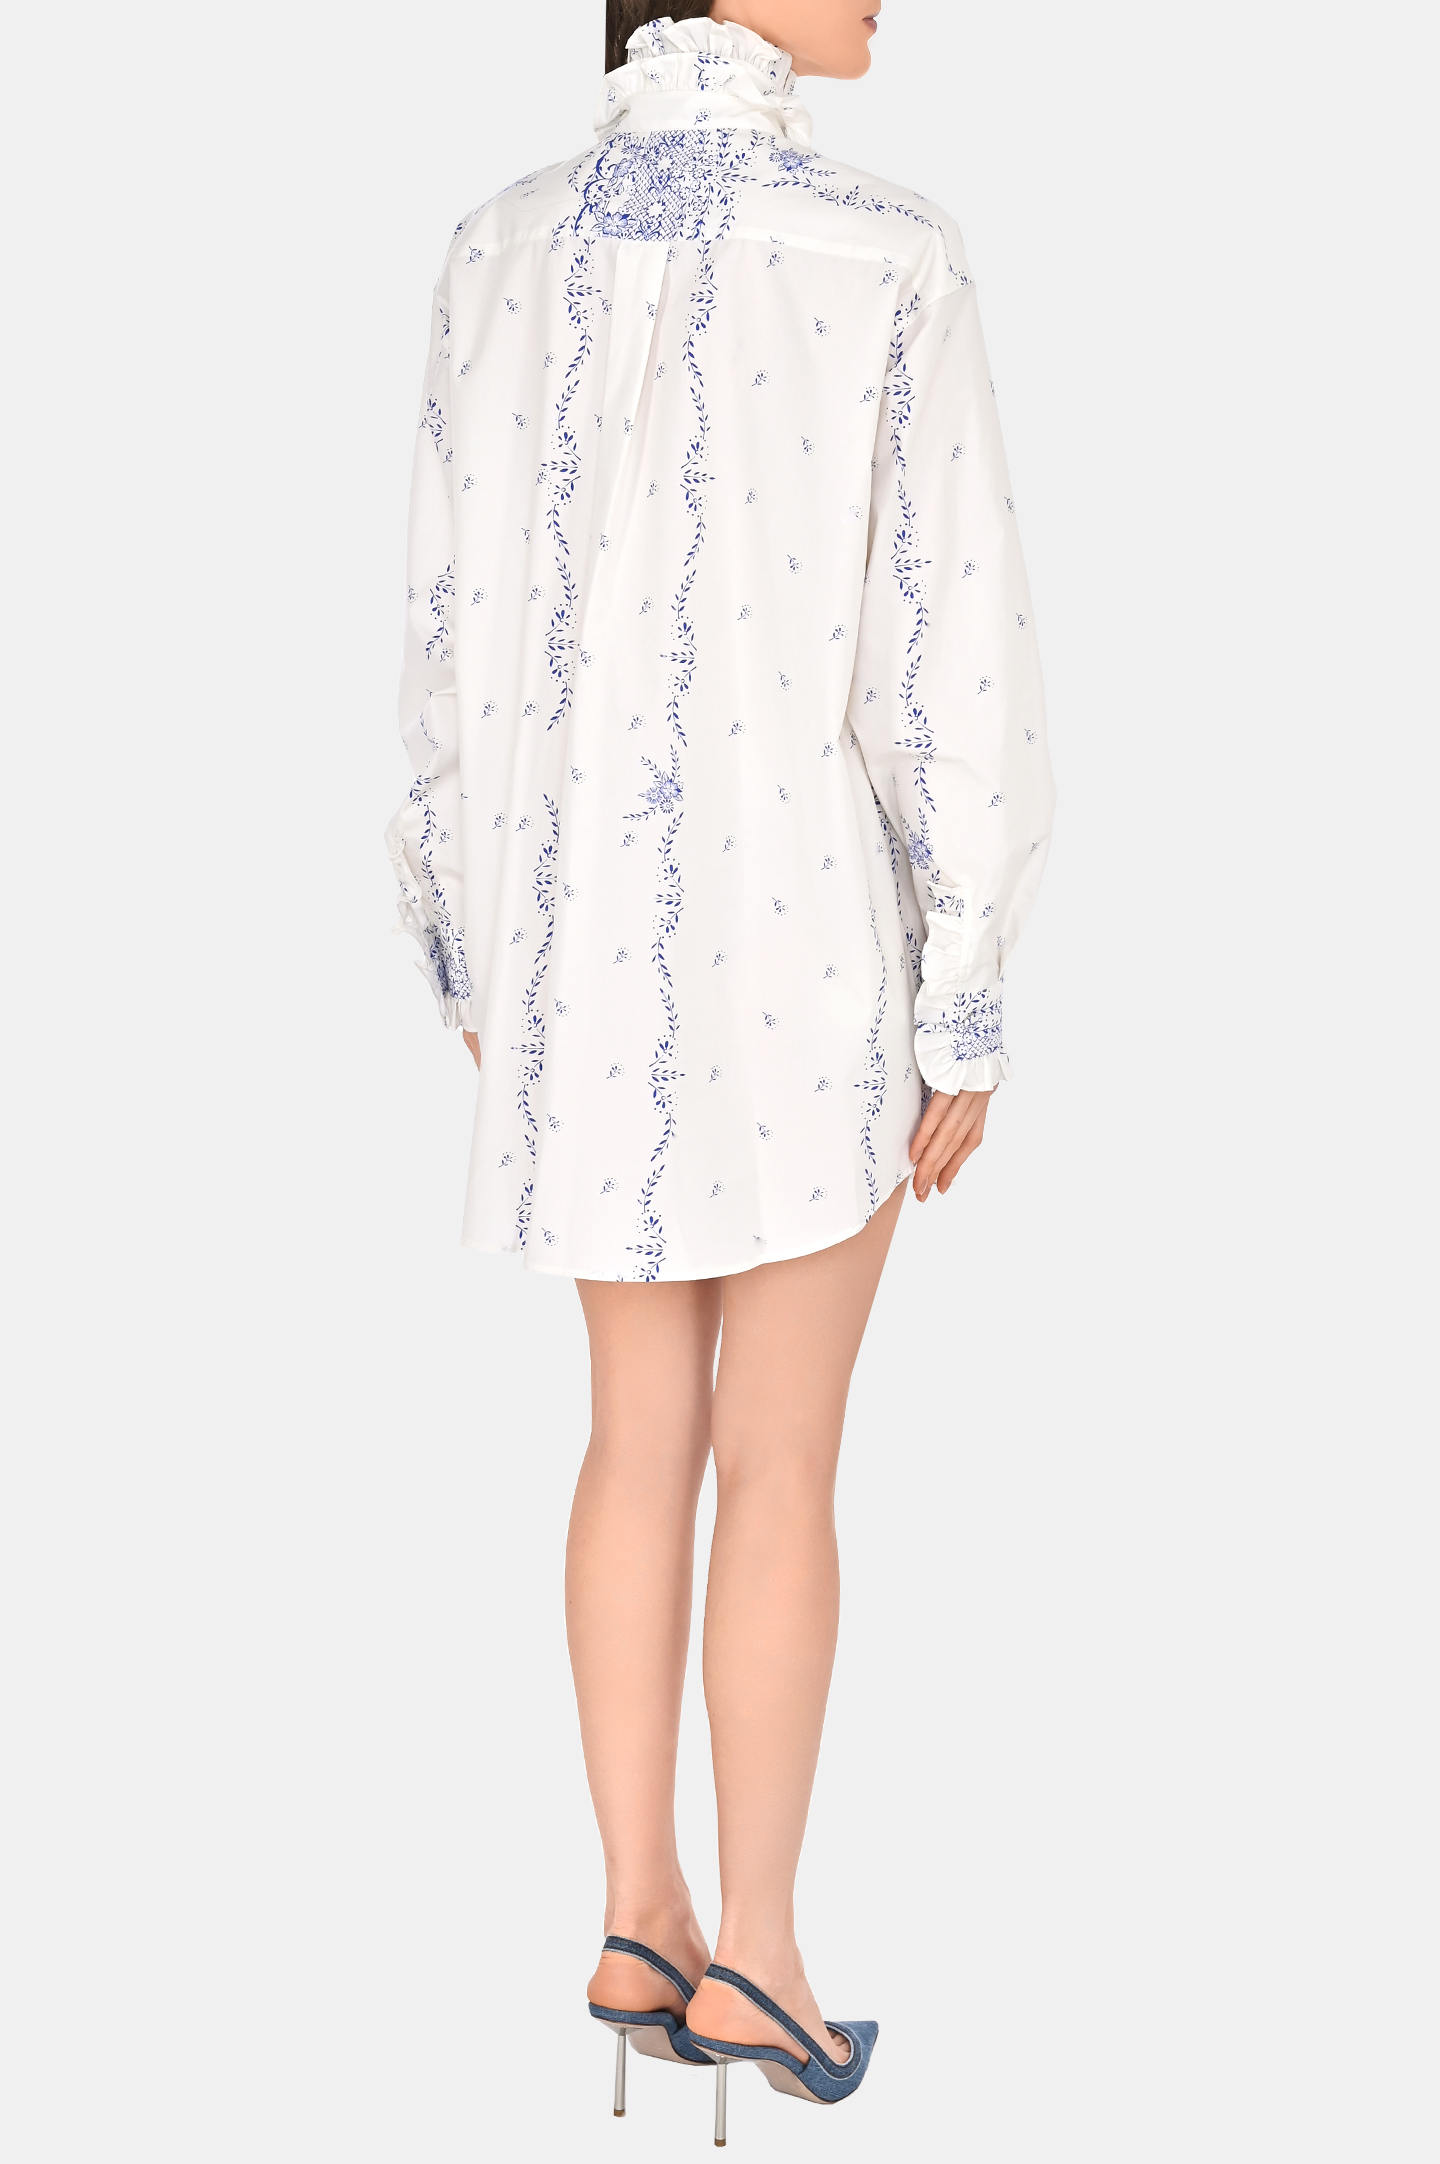 Платье-рубашка из хлопка с цветочным принтом PHILOSOPHY DI LORENZO SERAFINI A0453 737, цвет: Белый, Женский